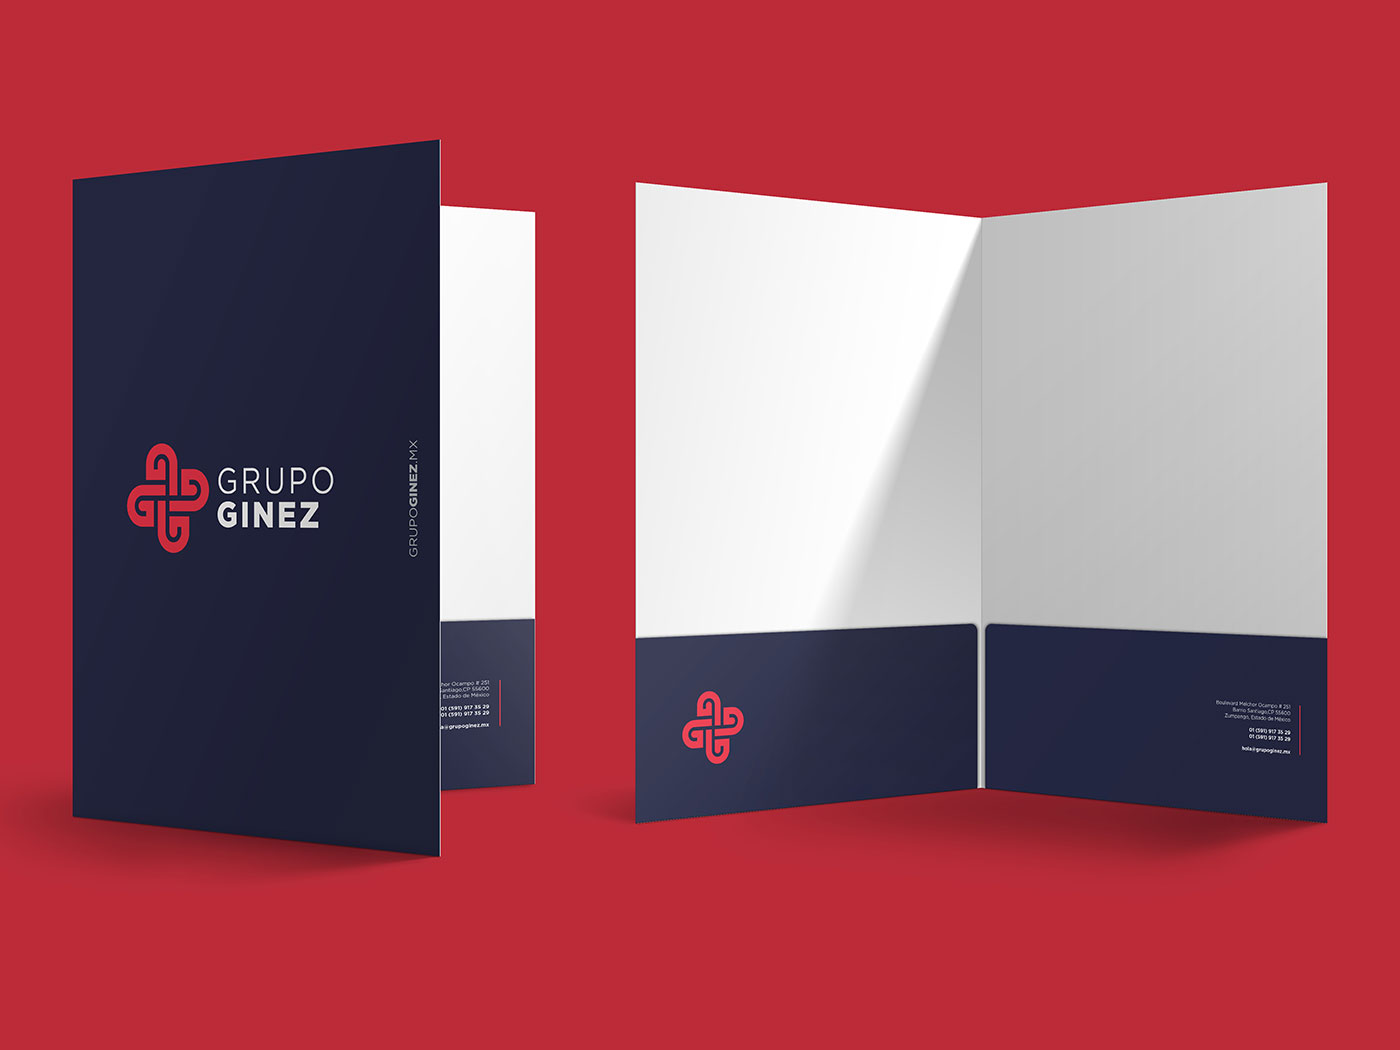 Grupo-Ginez-branding